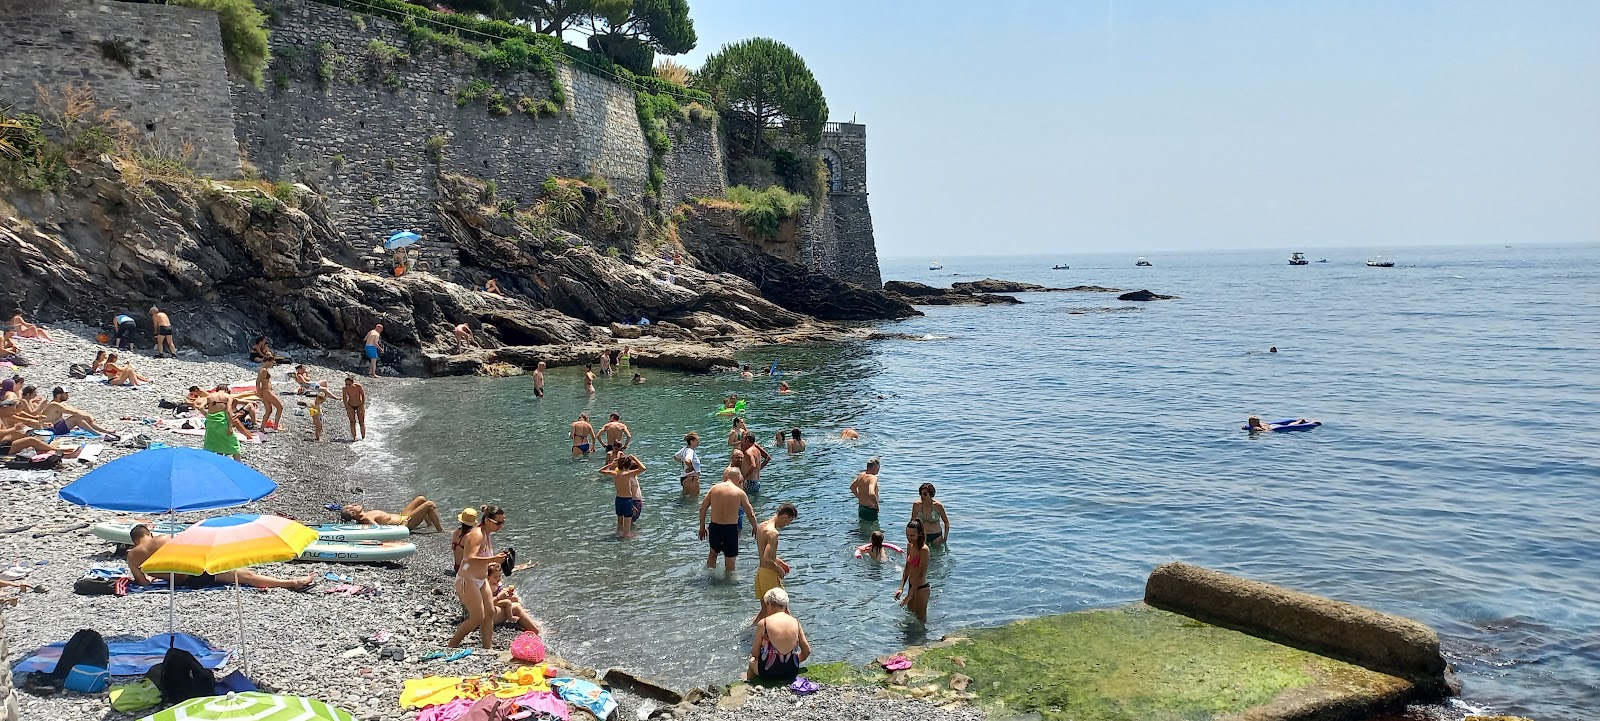 Photo of Spiaggia Pubblica Capolungo with straight shore